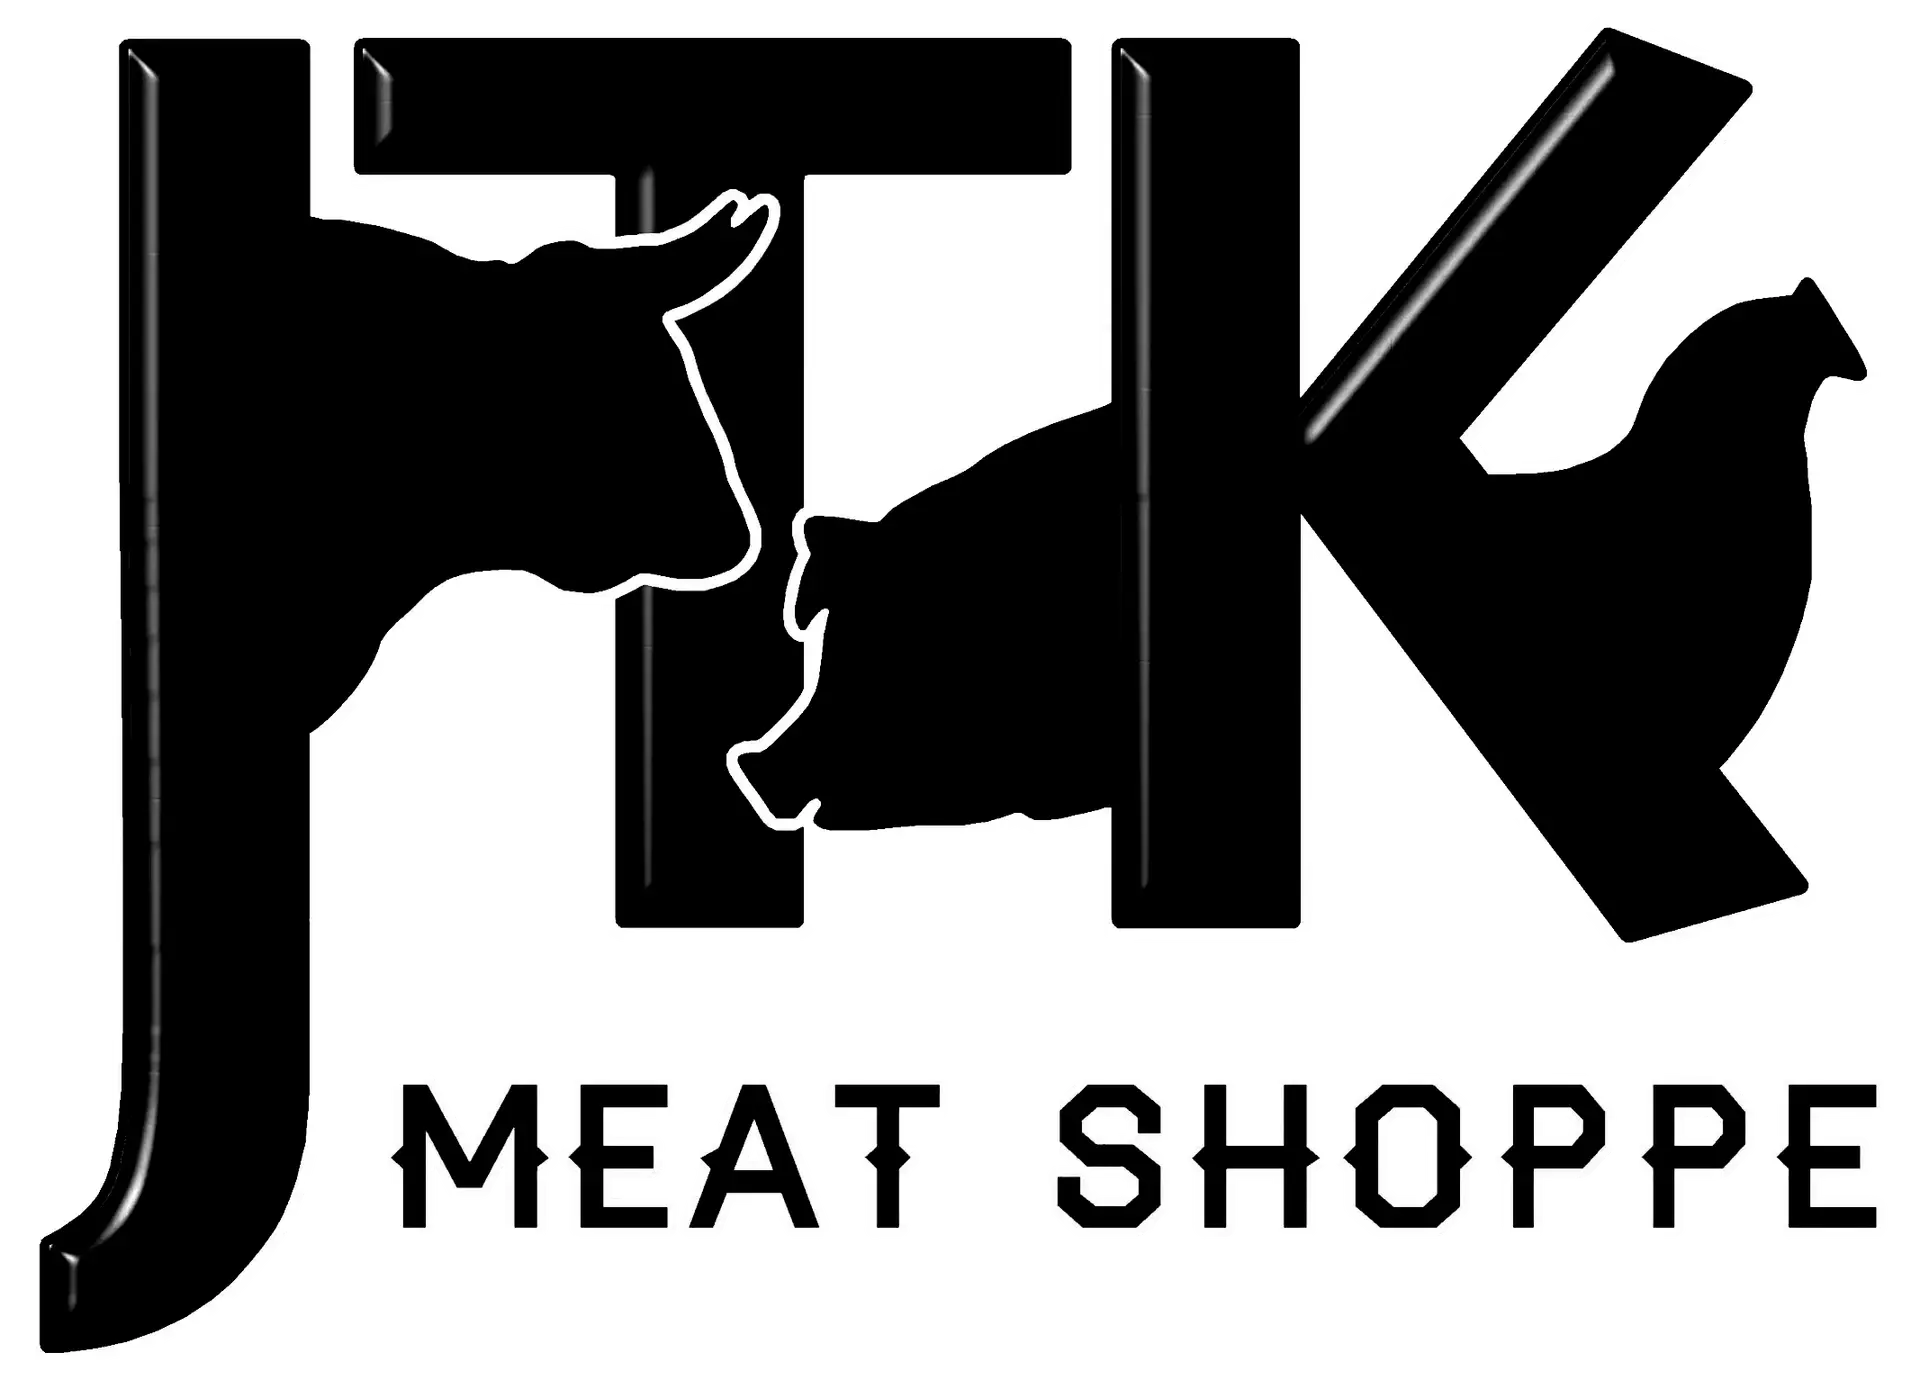 JTK meat shoppe logo